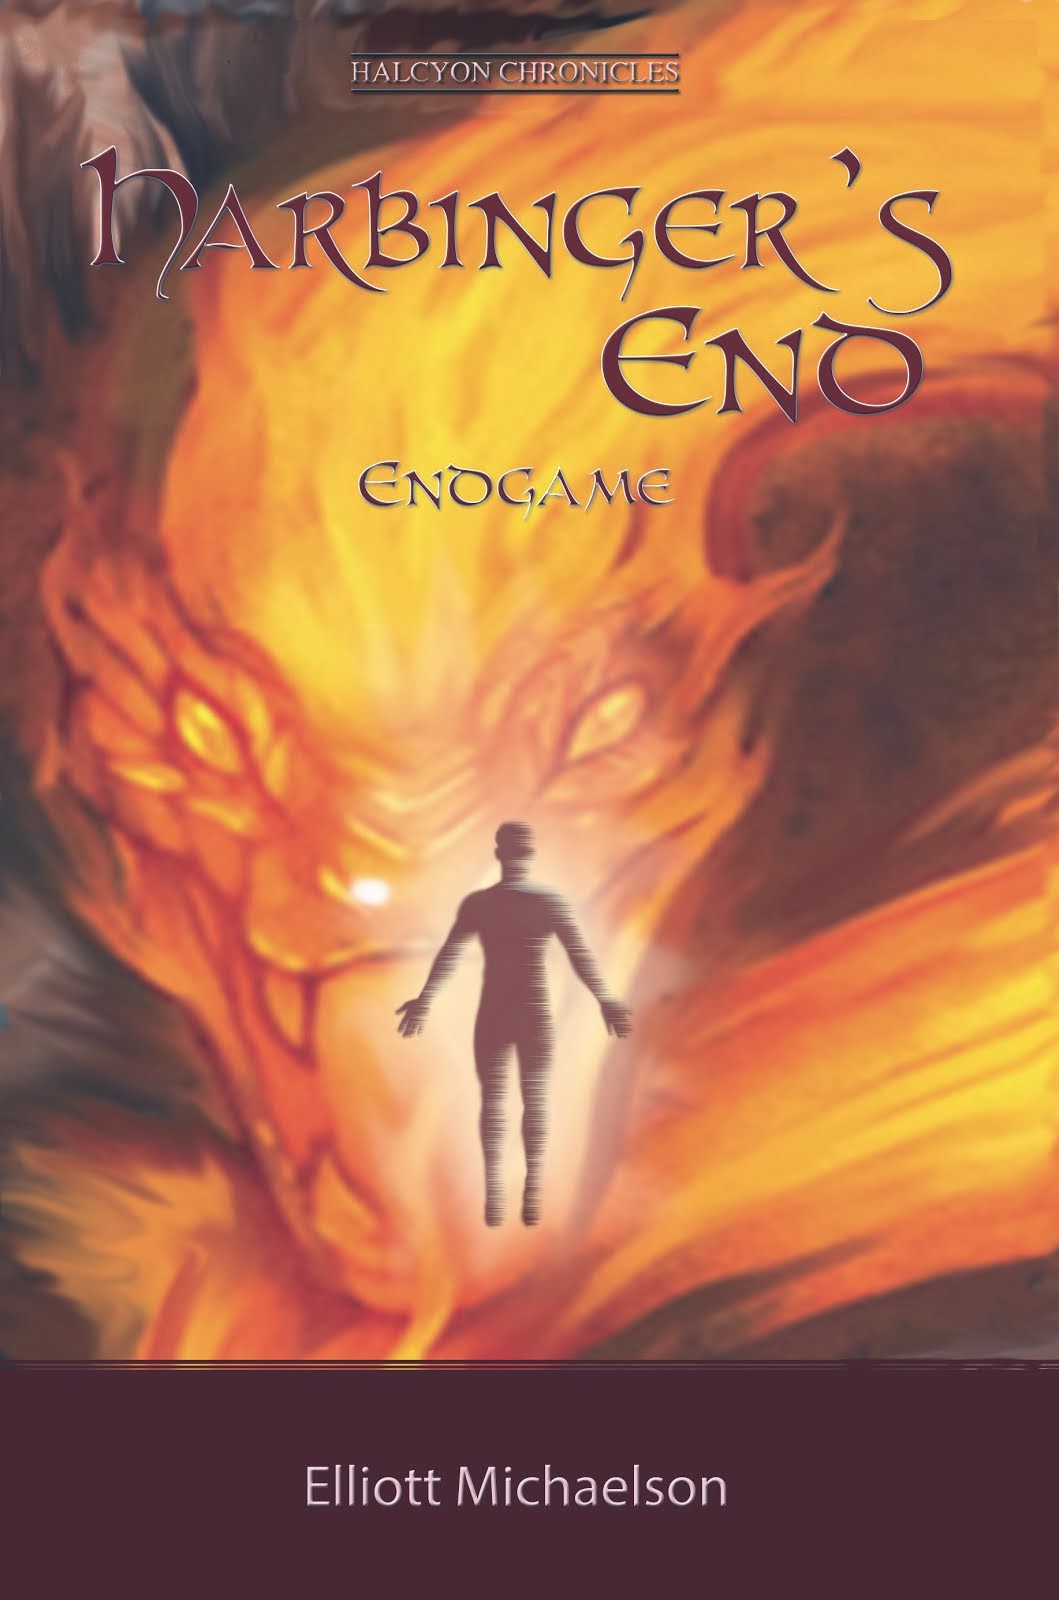 Book 3: Endgame